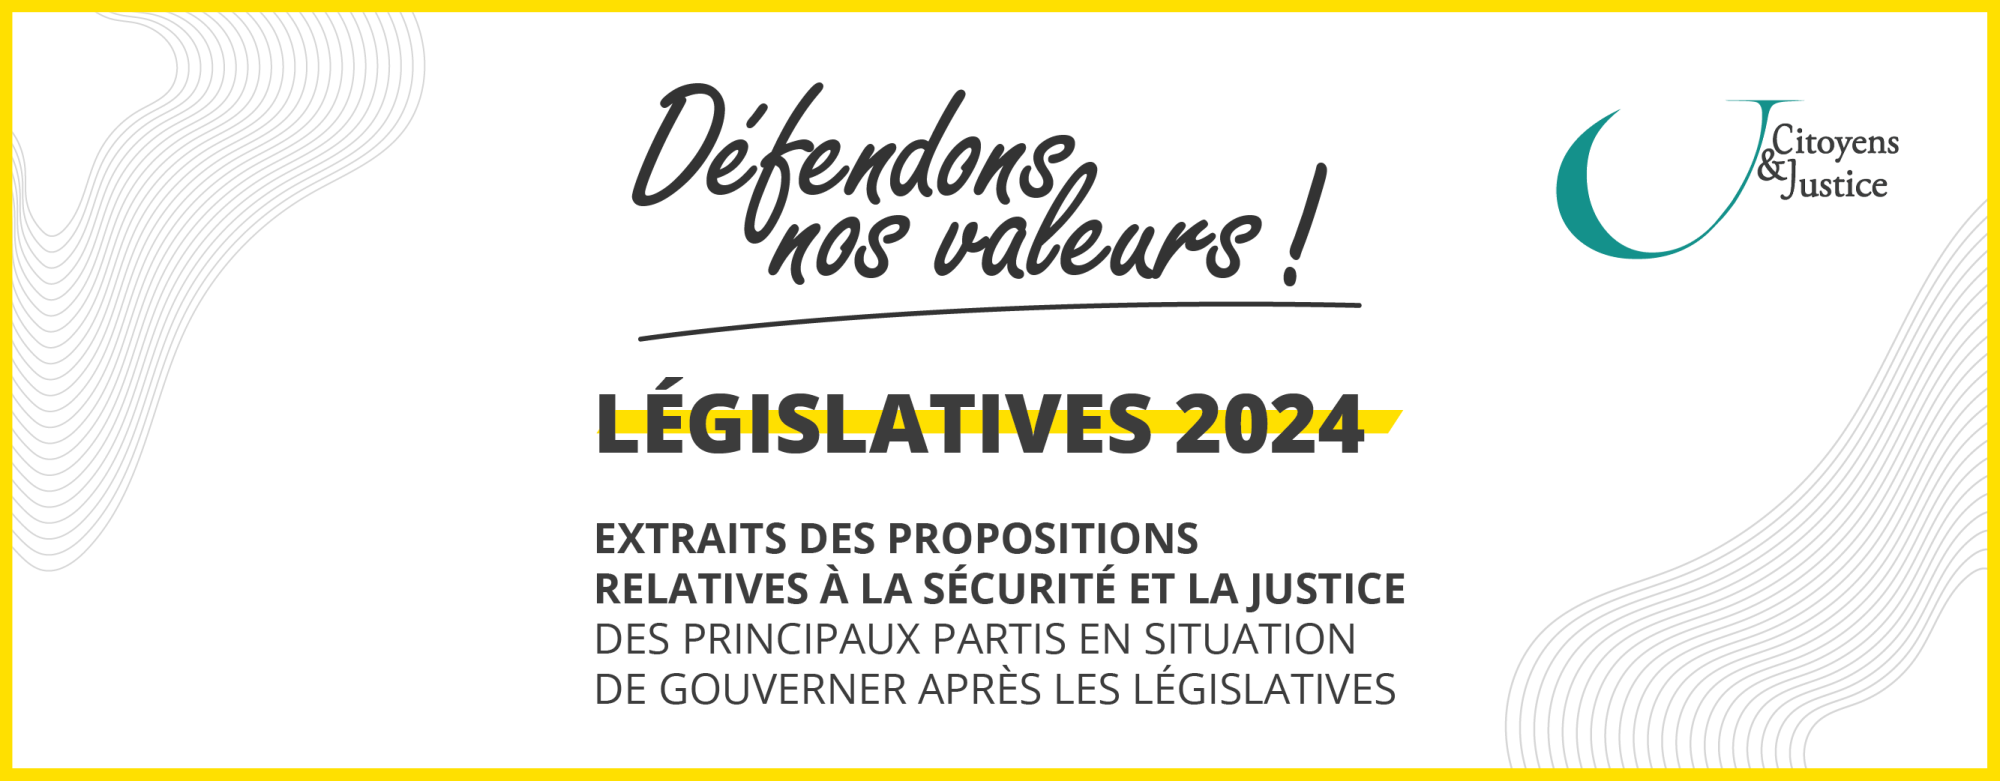 Législatives 2024 : Défendons nos valeurs !